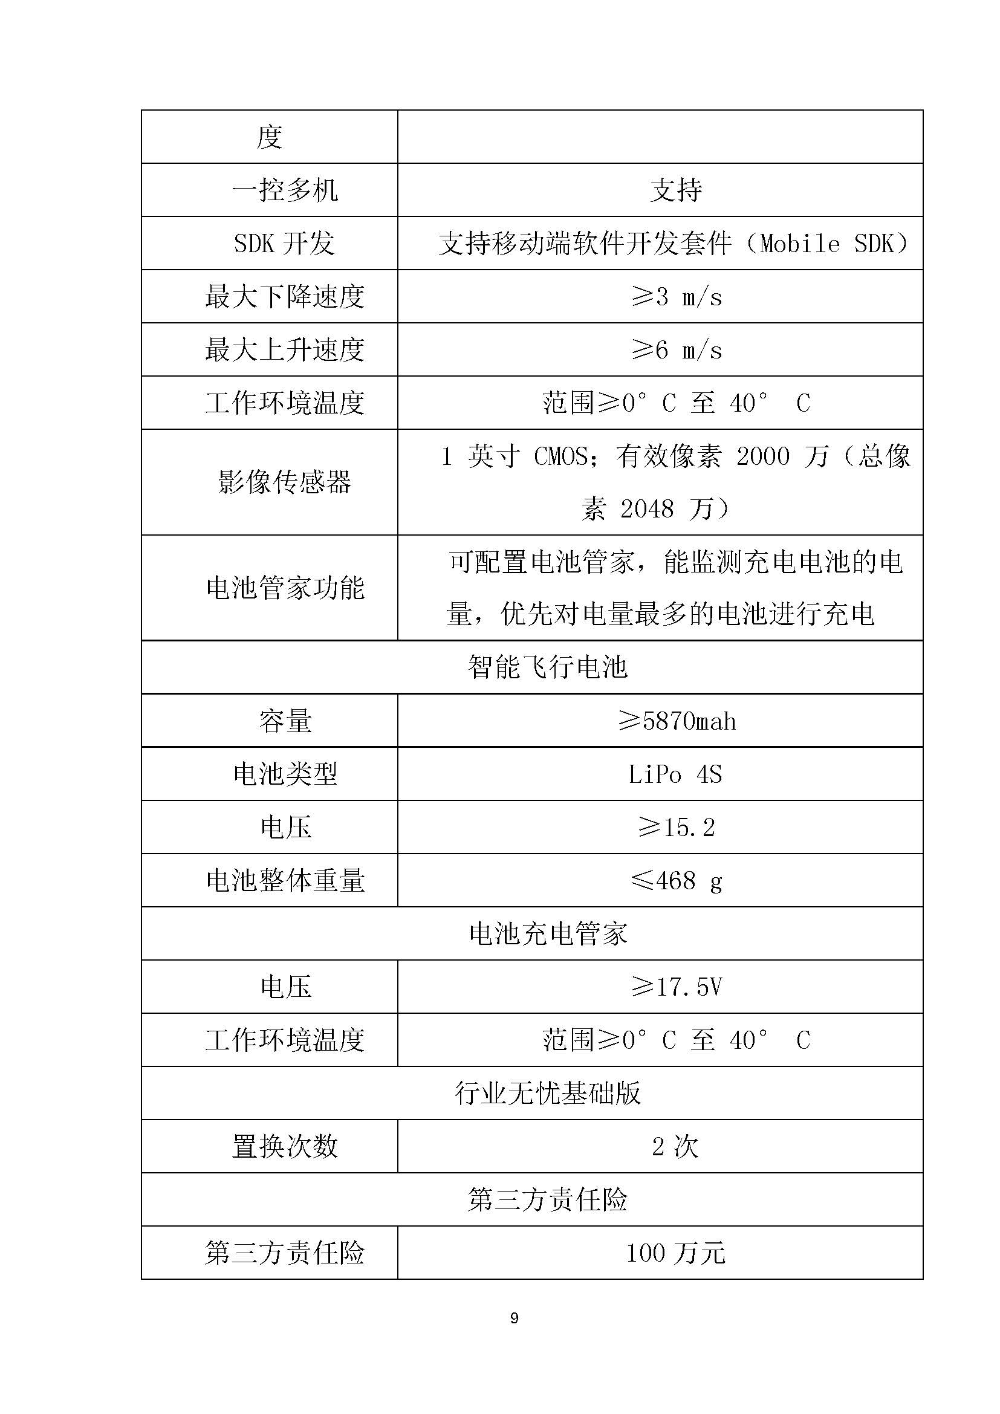 210420江门市国土测绘大队采购计算机设备维修和保养服务等项目采购公告 (9).jpg